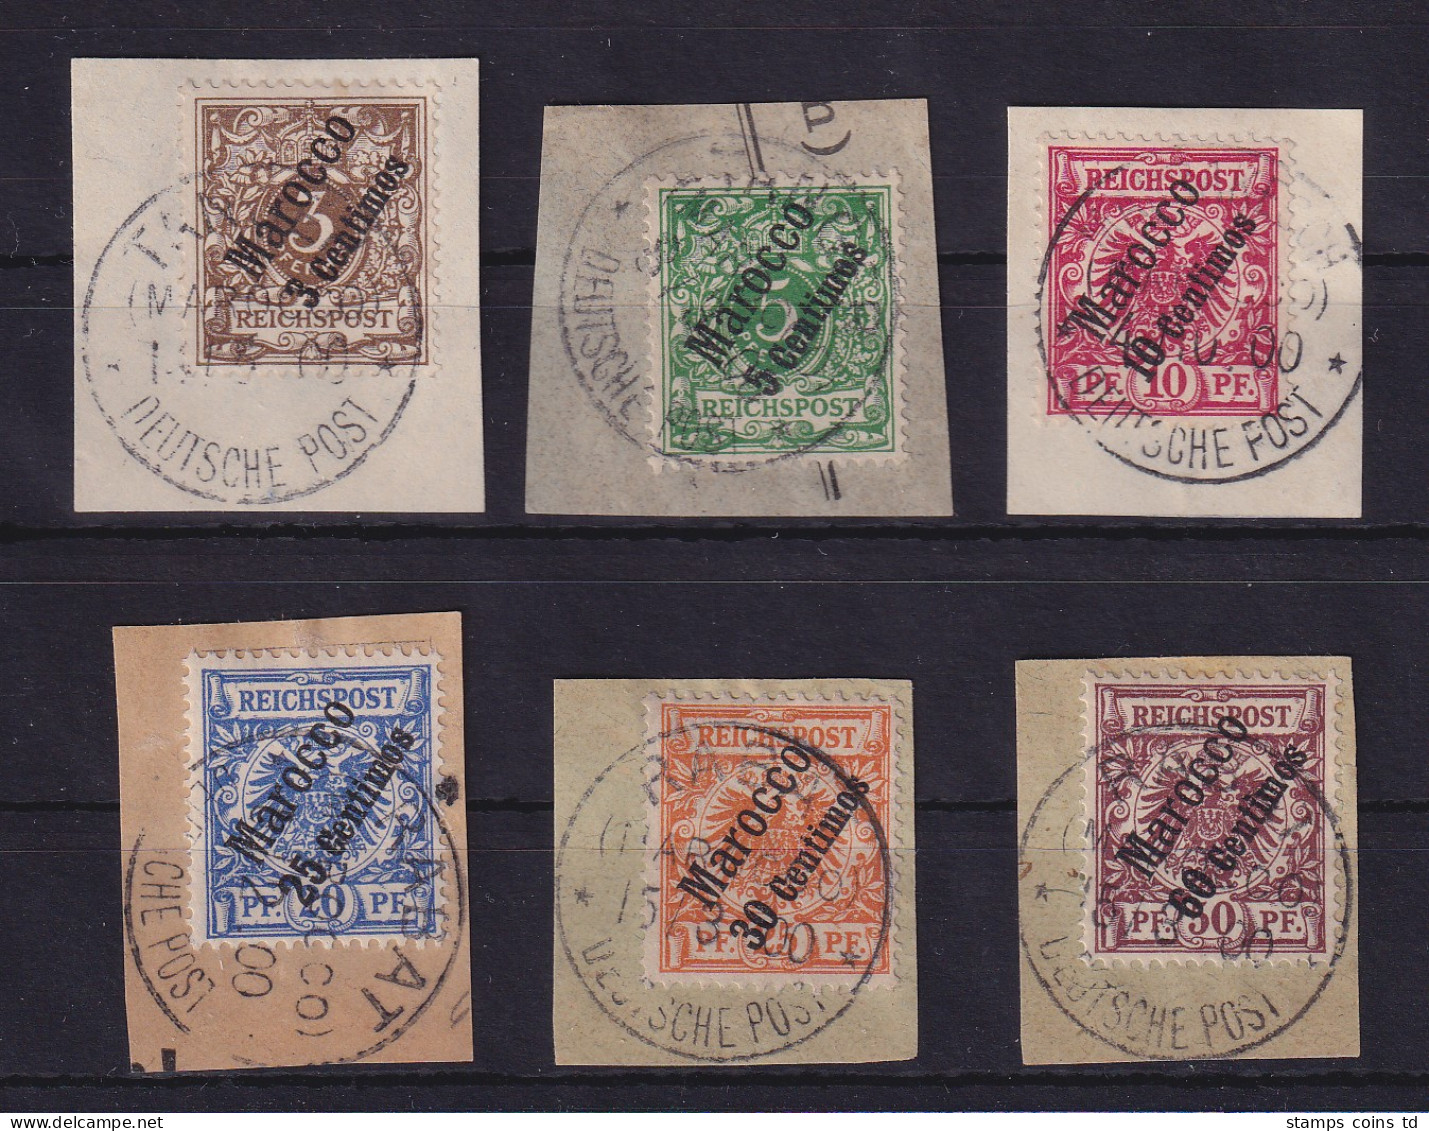 Deutsche Post In Marokko 1899  Mi.-Nr. 1-6 Satz Kpl. O Auf Briefstücken - Marruecos (oficinas)